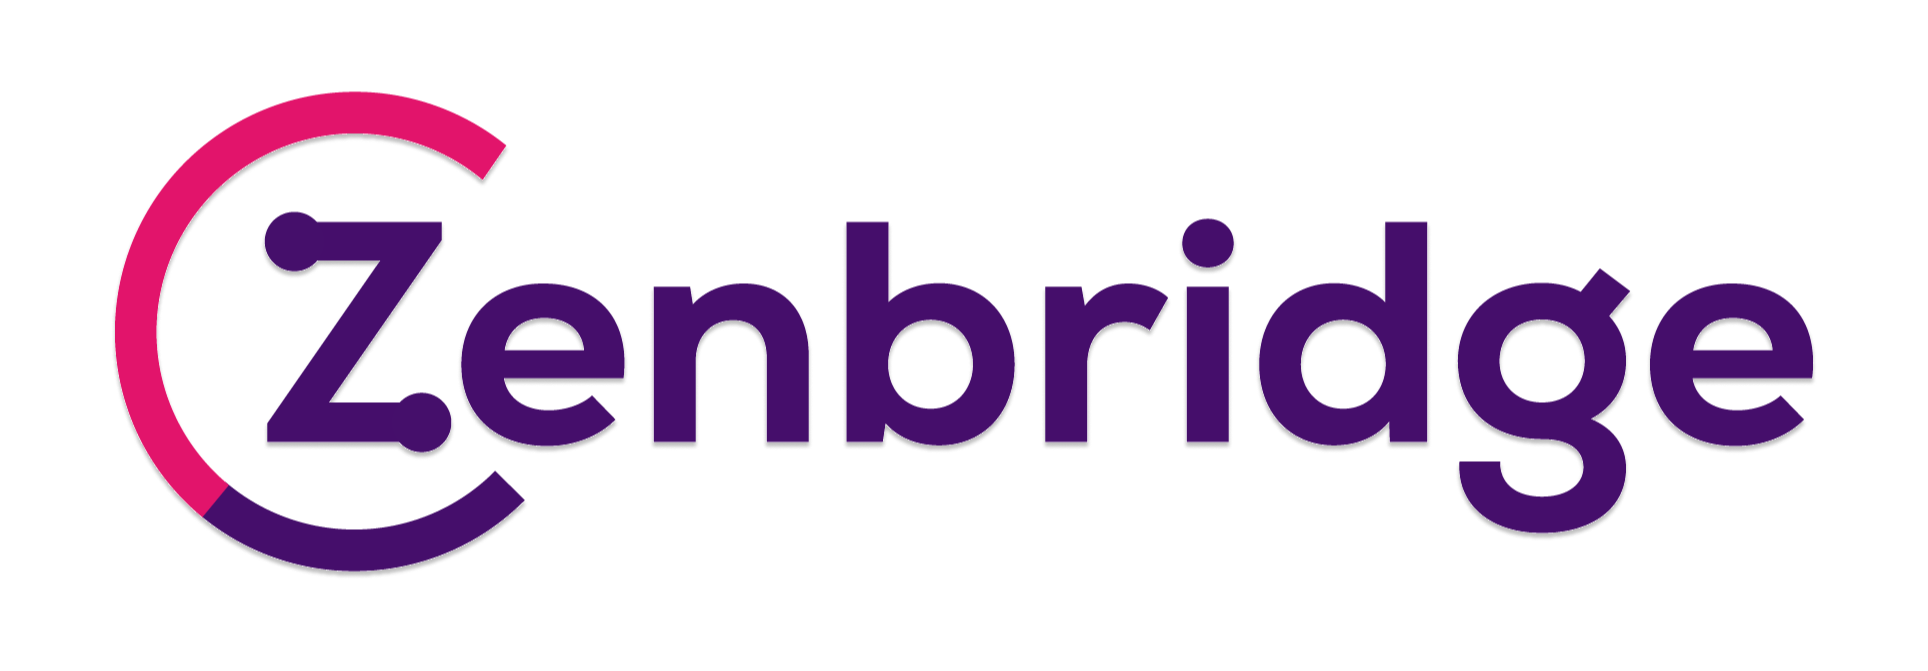 zenbridge_logo